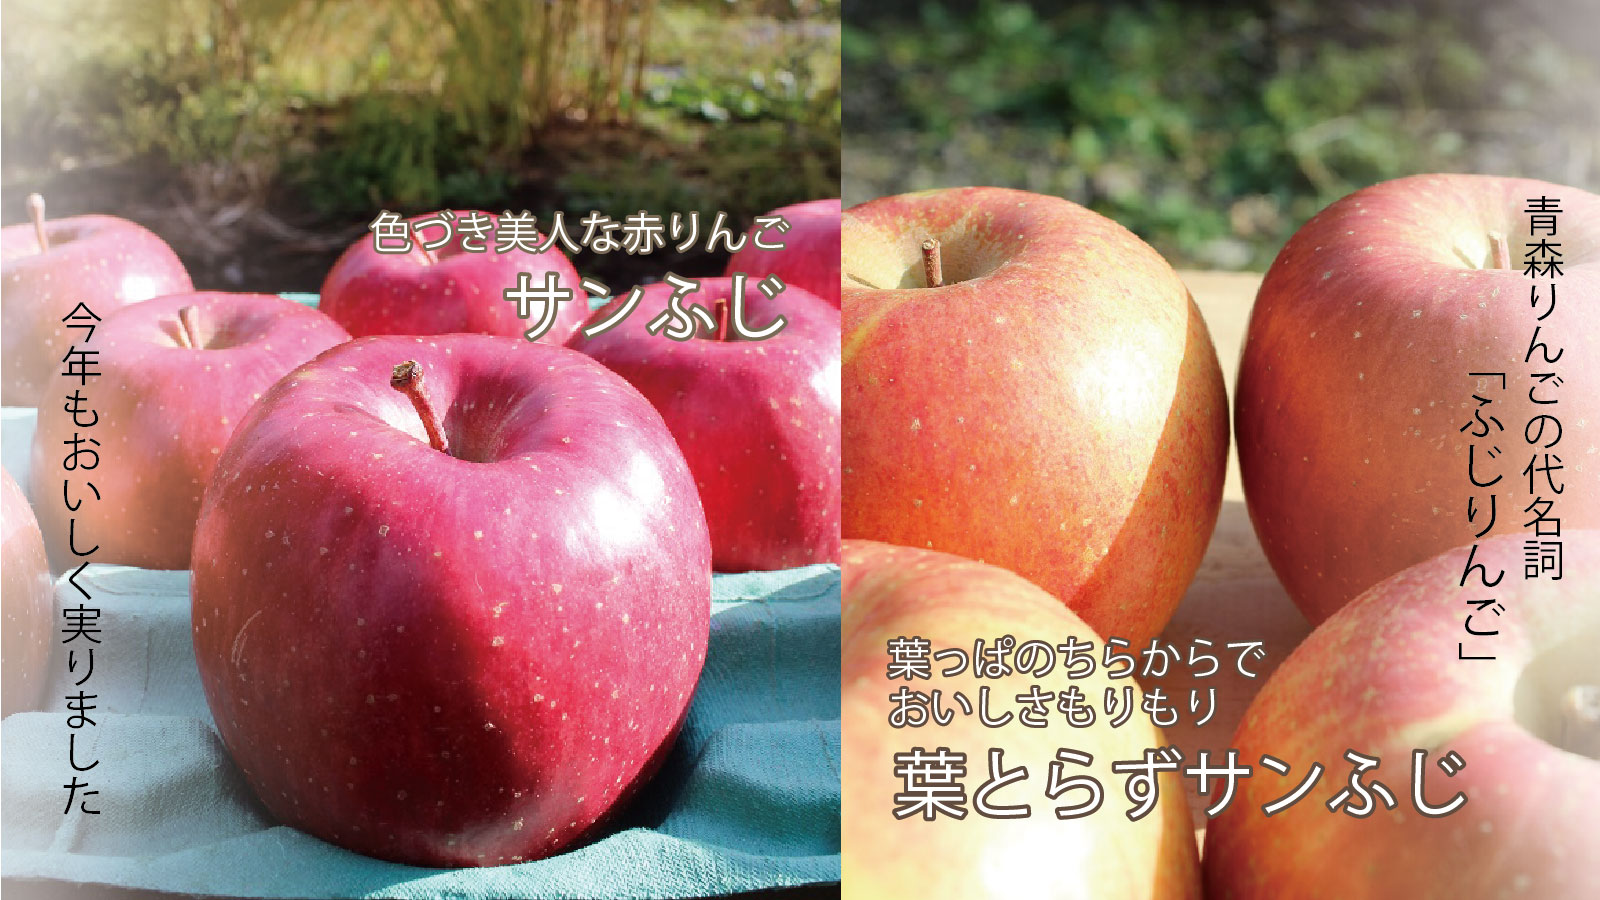 福島県産 もりもり サンふじ 家庭用 ふじ 13キロ りんご